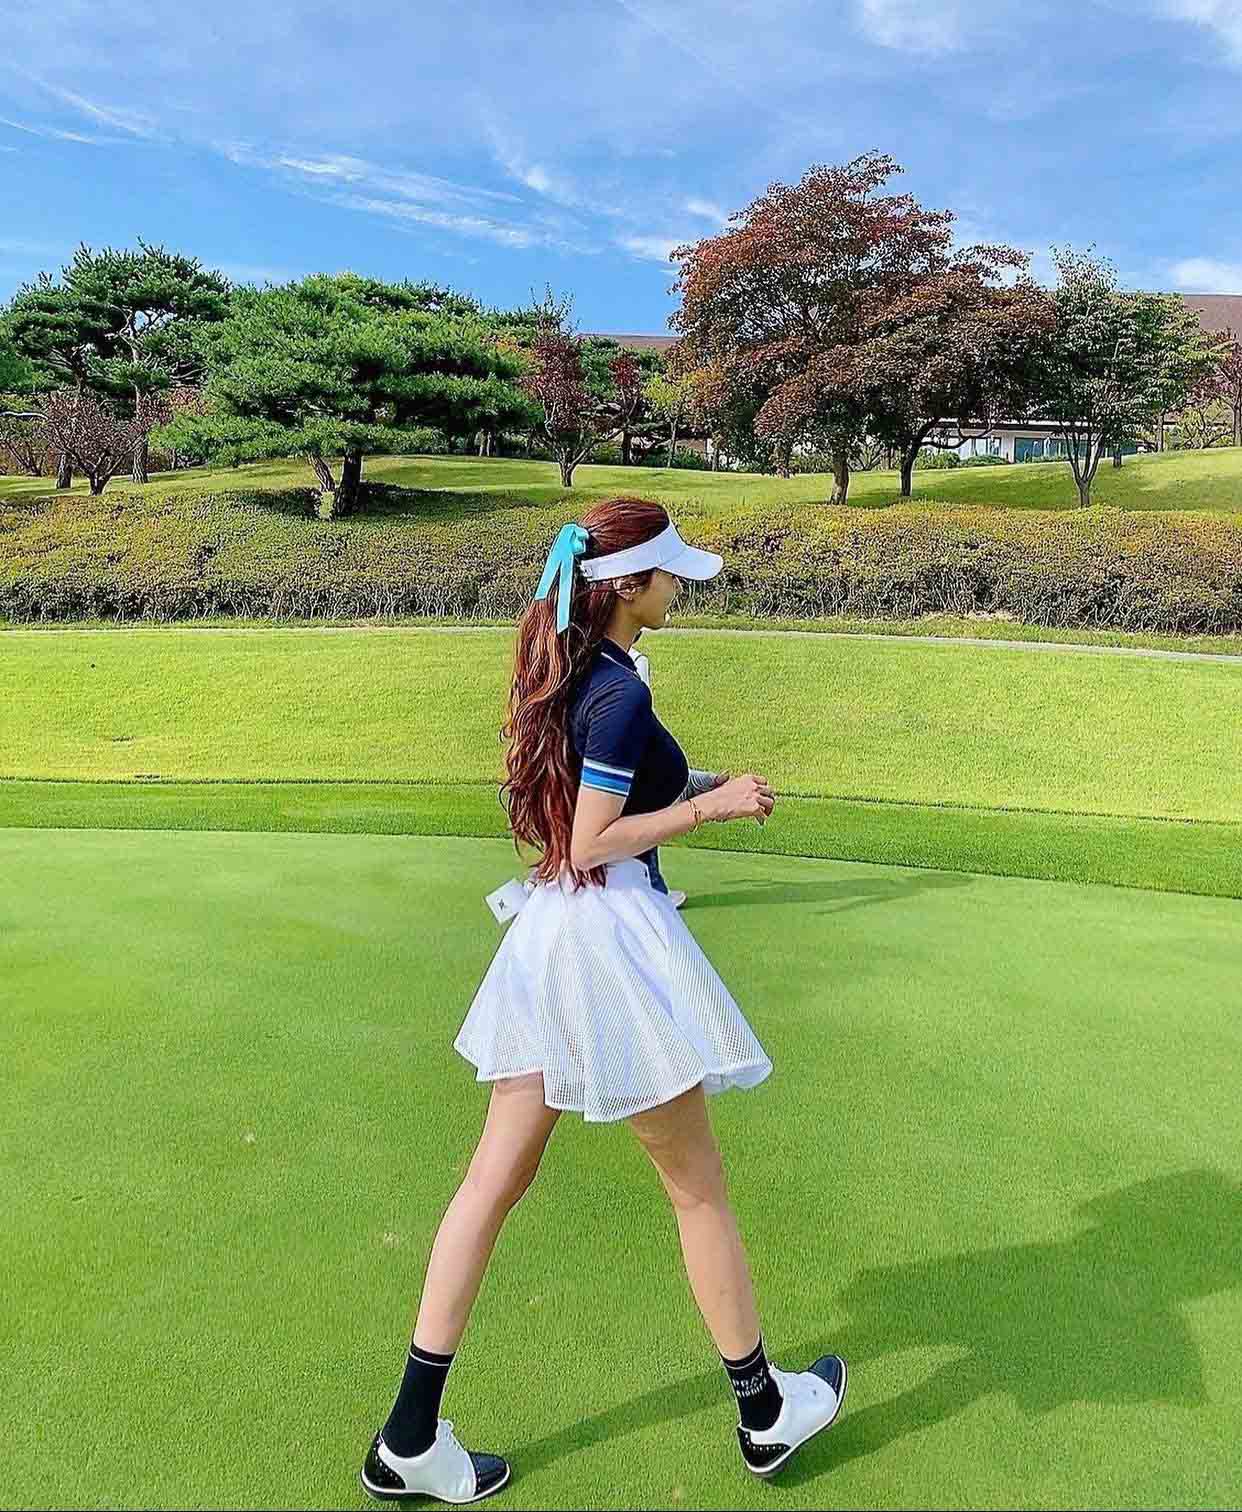 Mẫu thể thao Hàn Quốc chuộng diện váy ngắn, khoe đôi chân dài đi chơi golf 